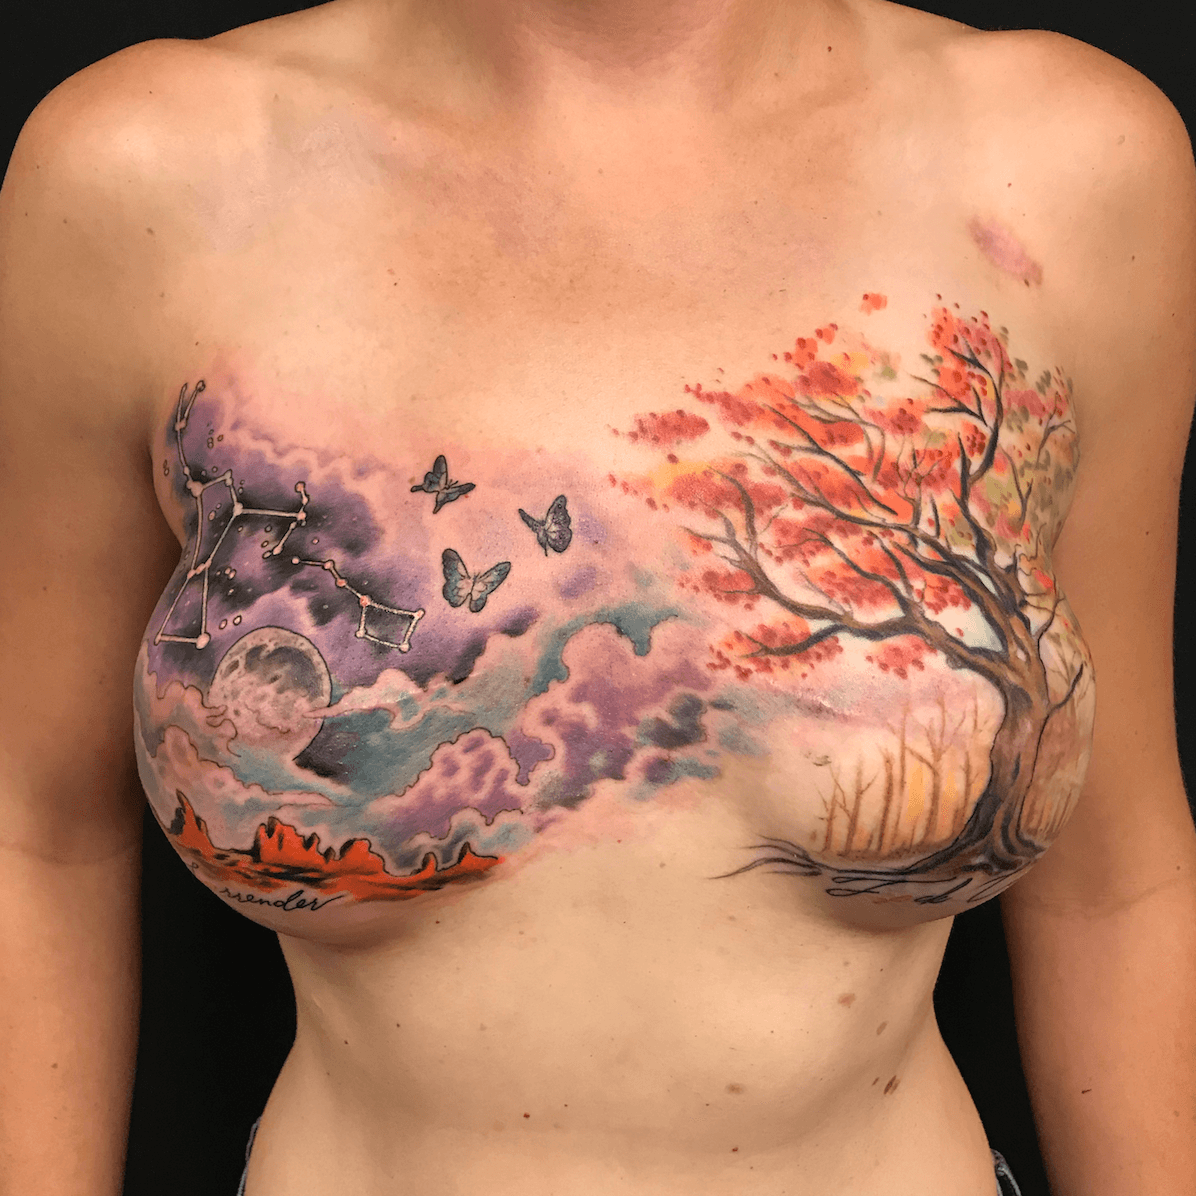 Tattoo uploaded by Anatta Vela • Mastectomy tattoo by Shane Wallin